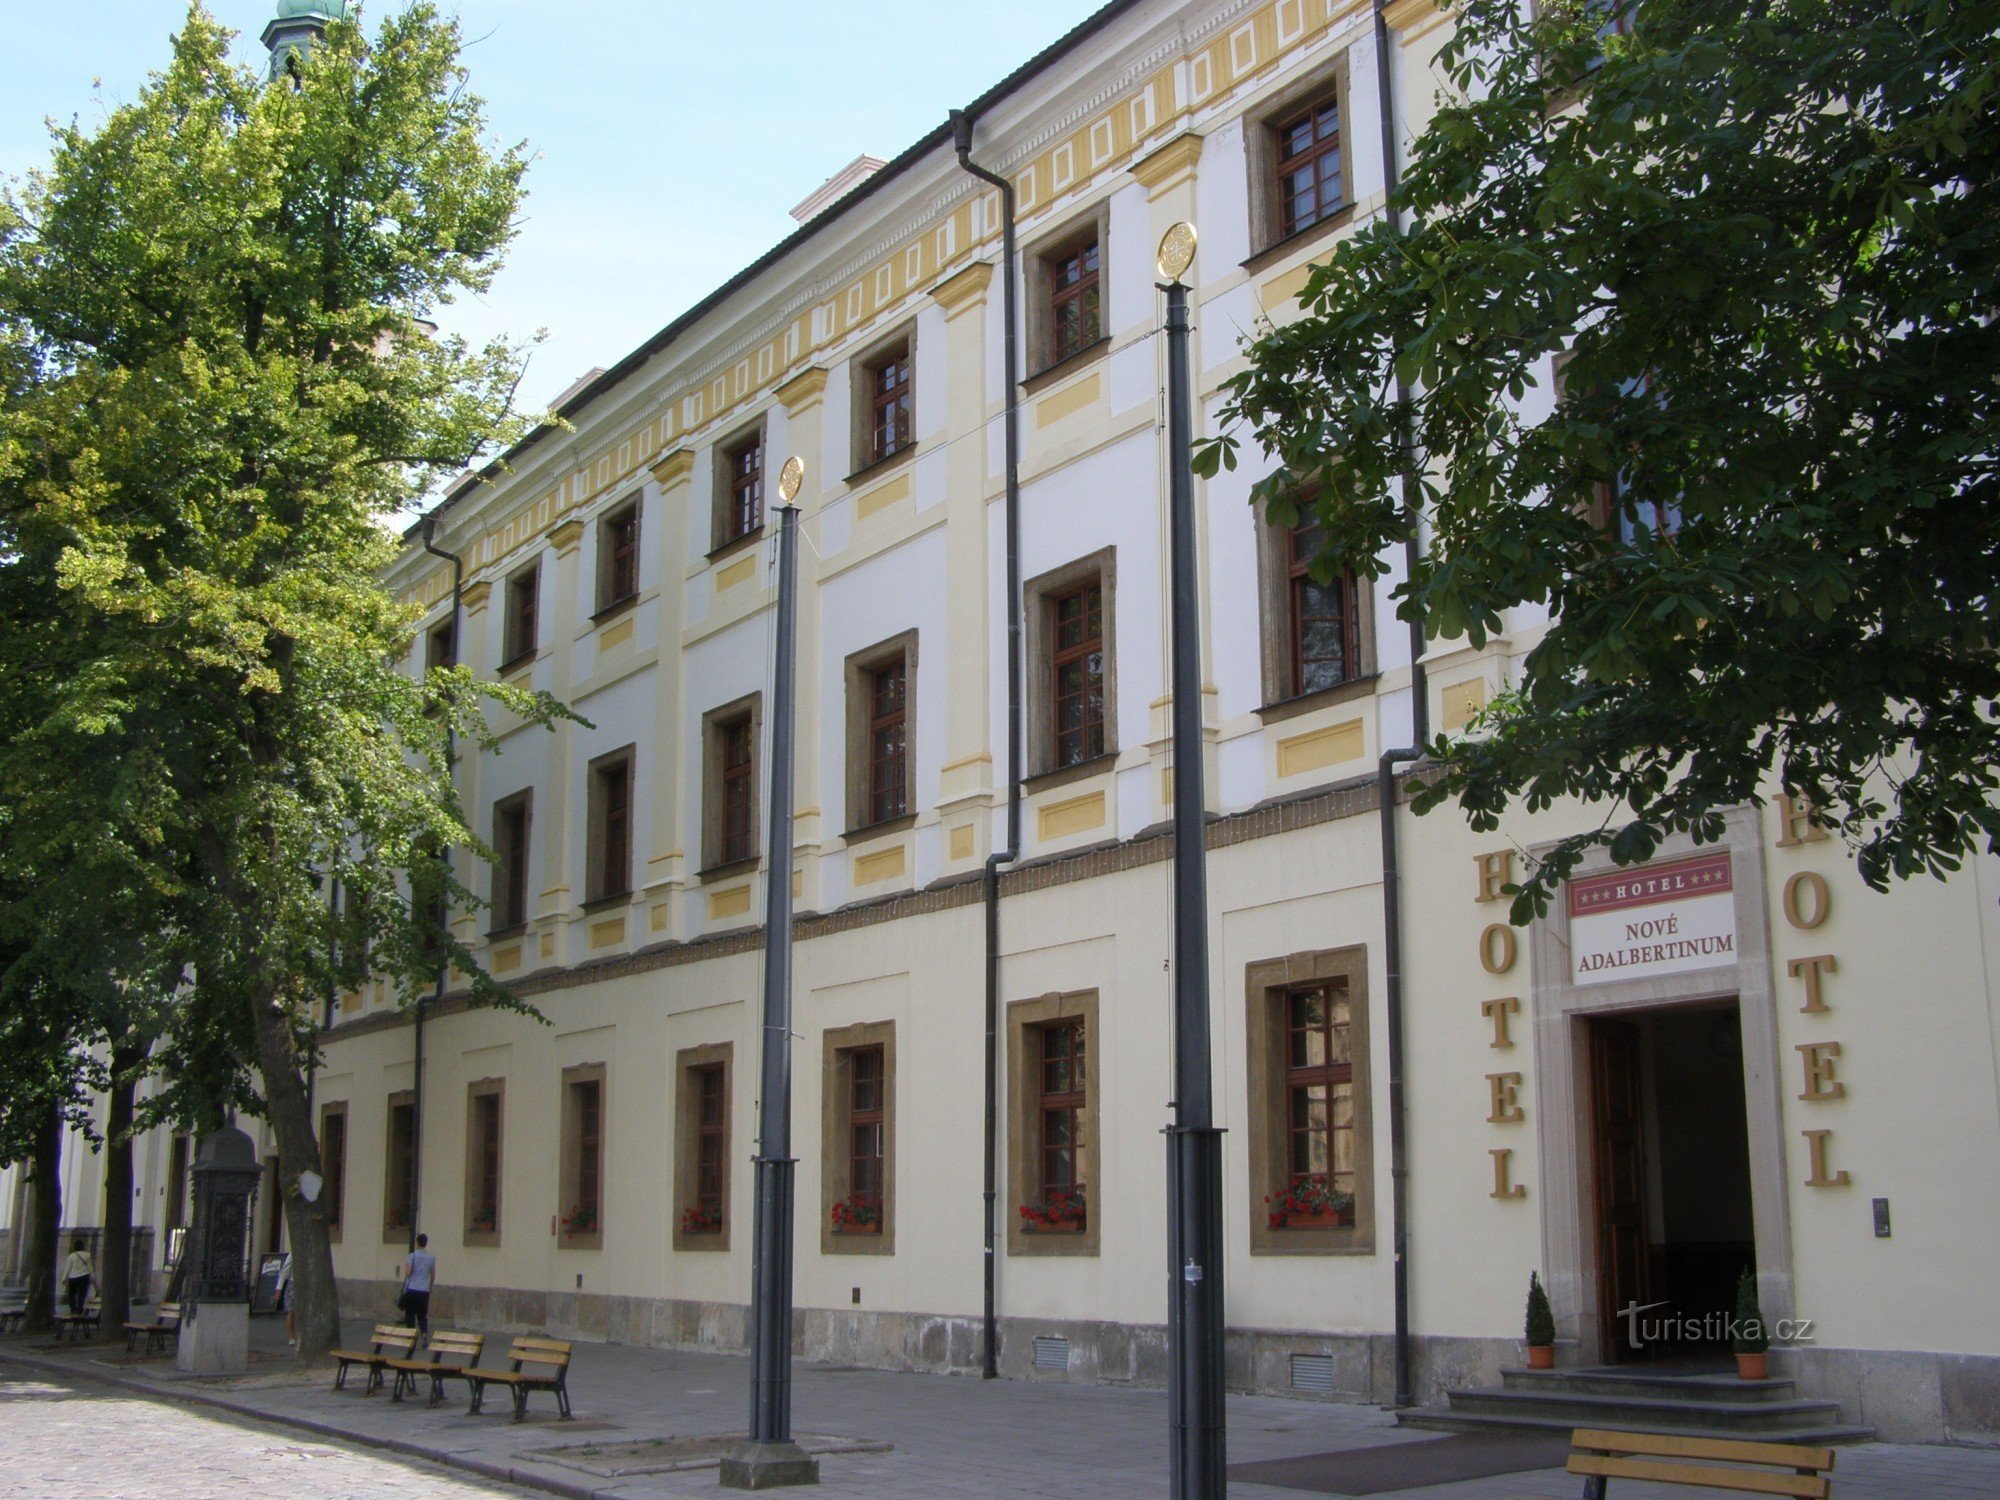 Hradec Králové - ex collegio dei Gesuiti - Nuovo Adalbertinum